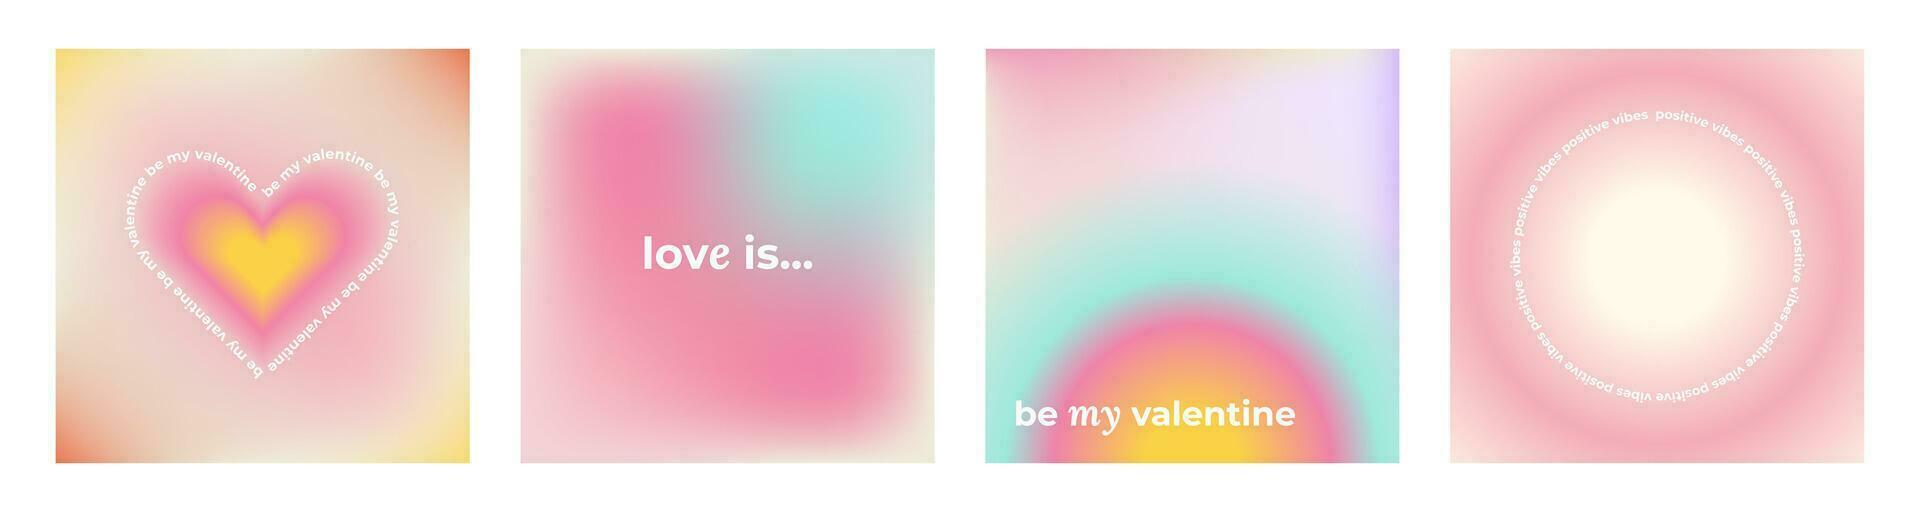 einstellen von y2k modisch ästhetisch abstrakt Gradient Rosa violett Hintergrund mit durchscheinend Aura irregulär Formen verschwommen Muster. Sozial Medien Valentinsgrüße Tag Poster, Geschichten Markieren Vorlagen vektor